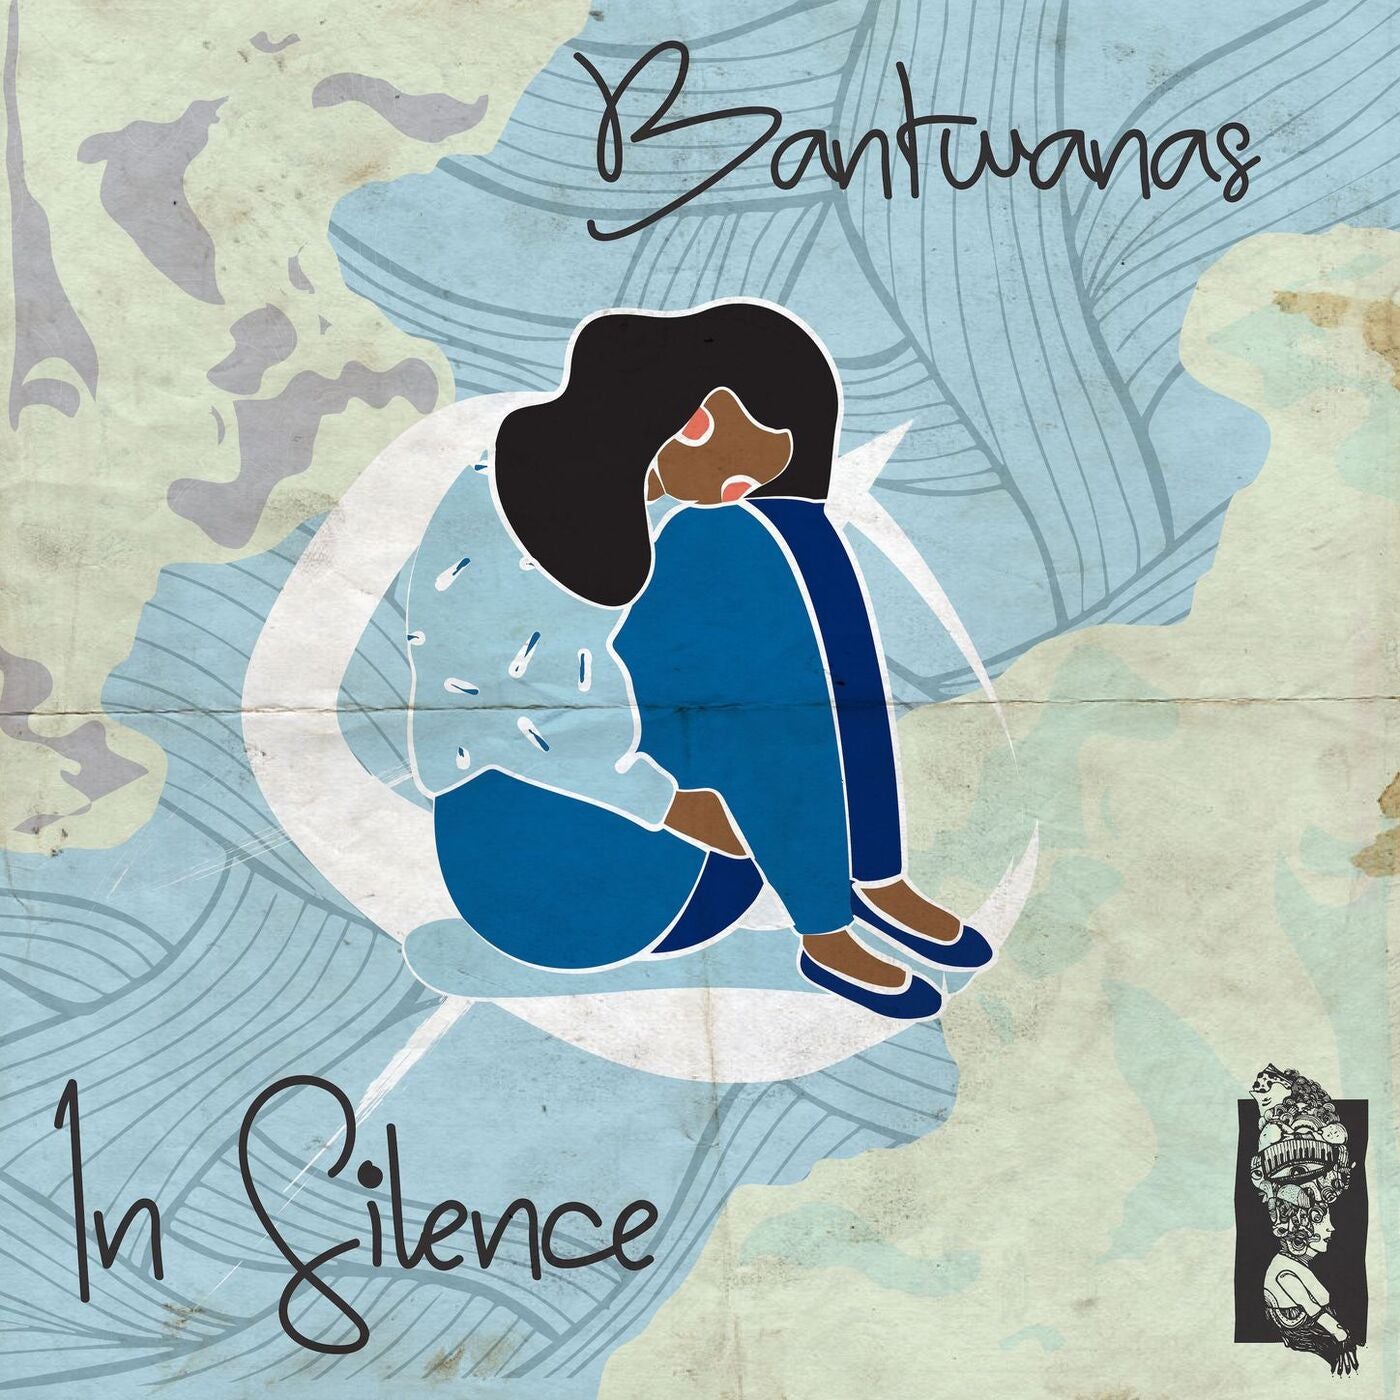 Bantwanas – In Silence [BK005]